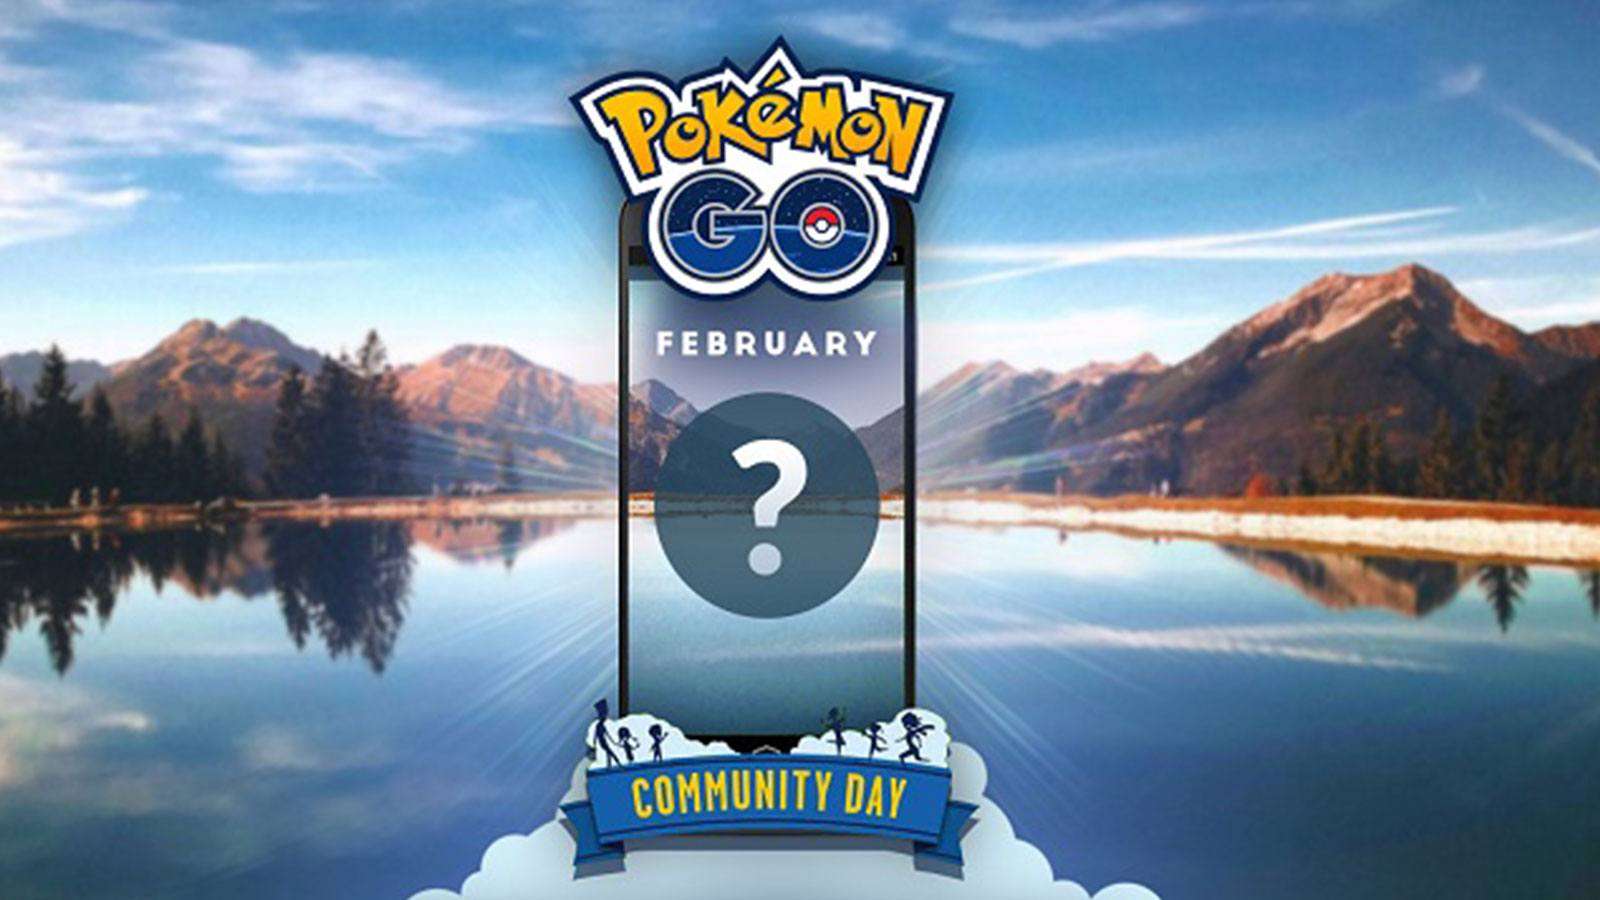 journée de la communauté Pokémon Go février